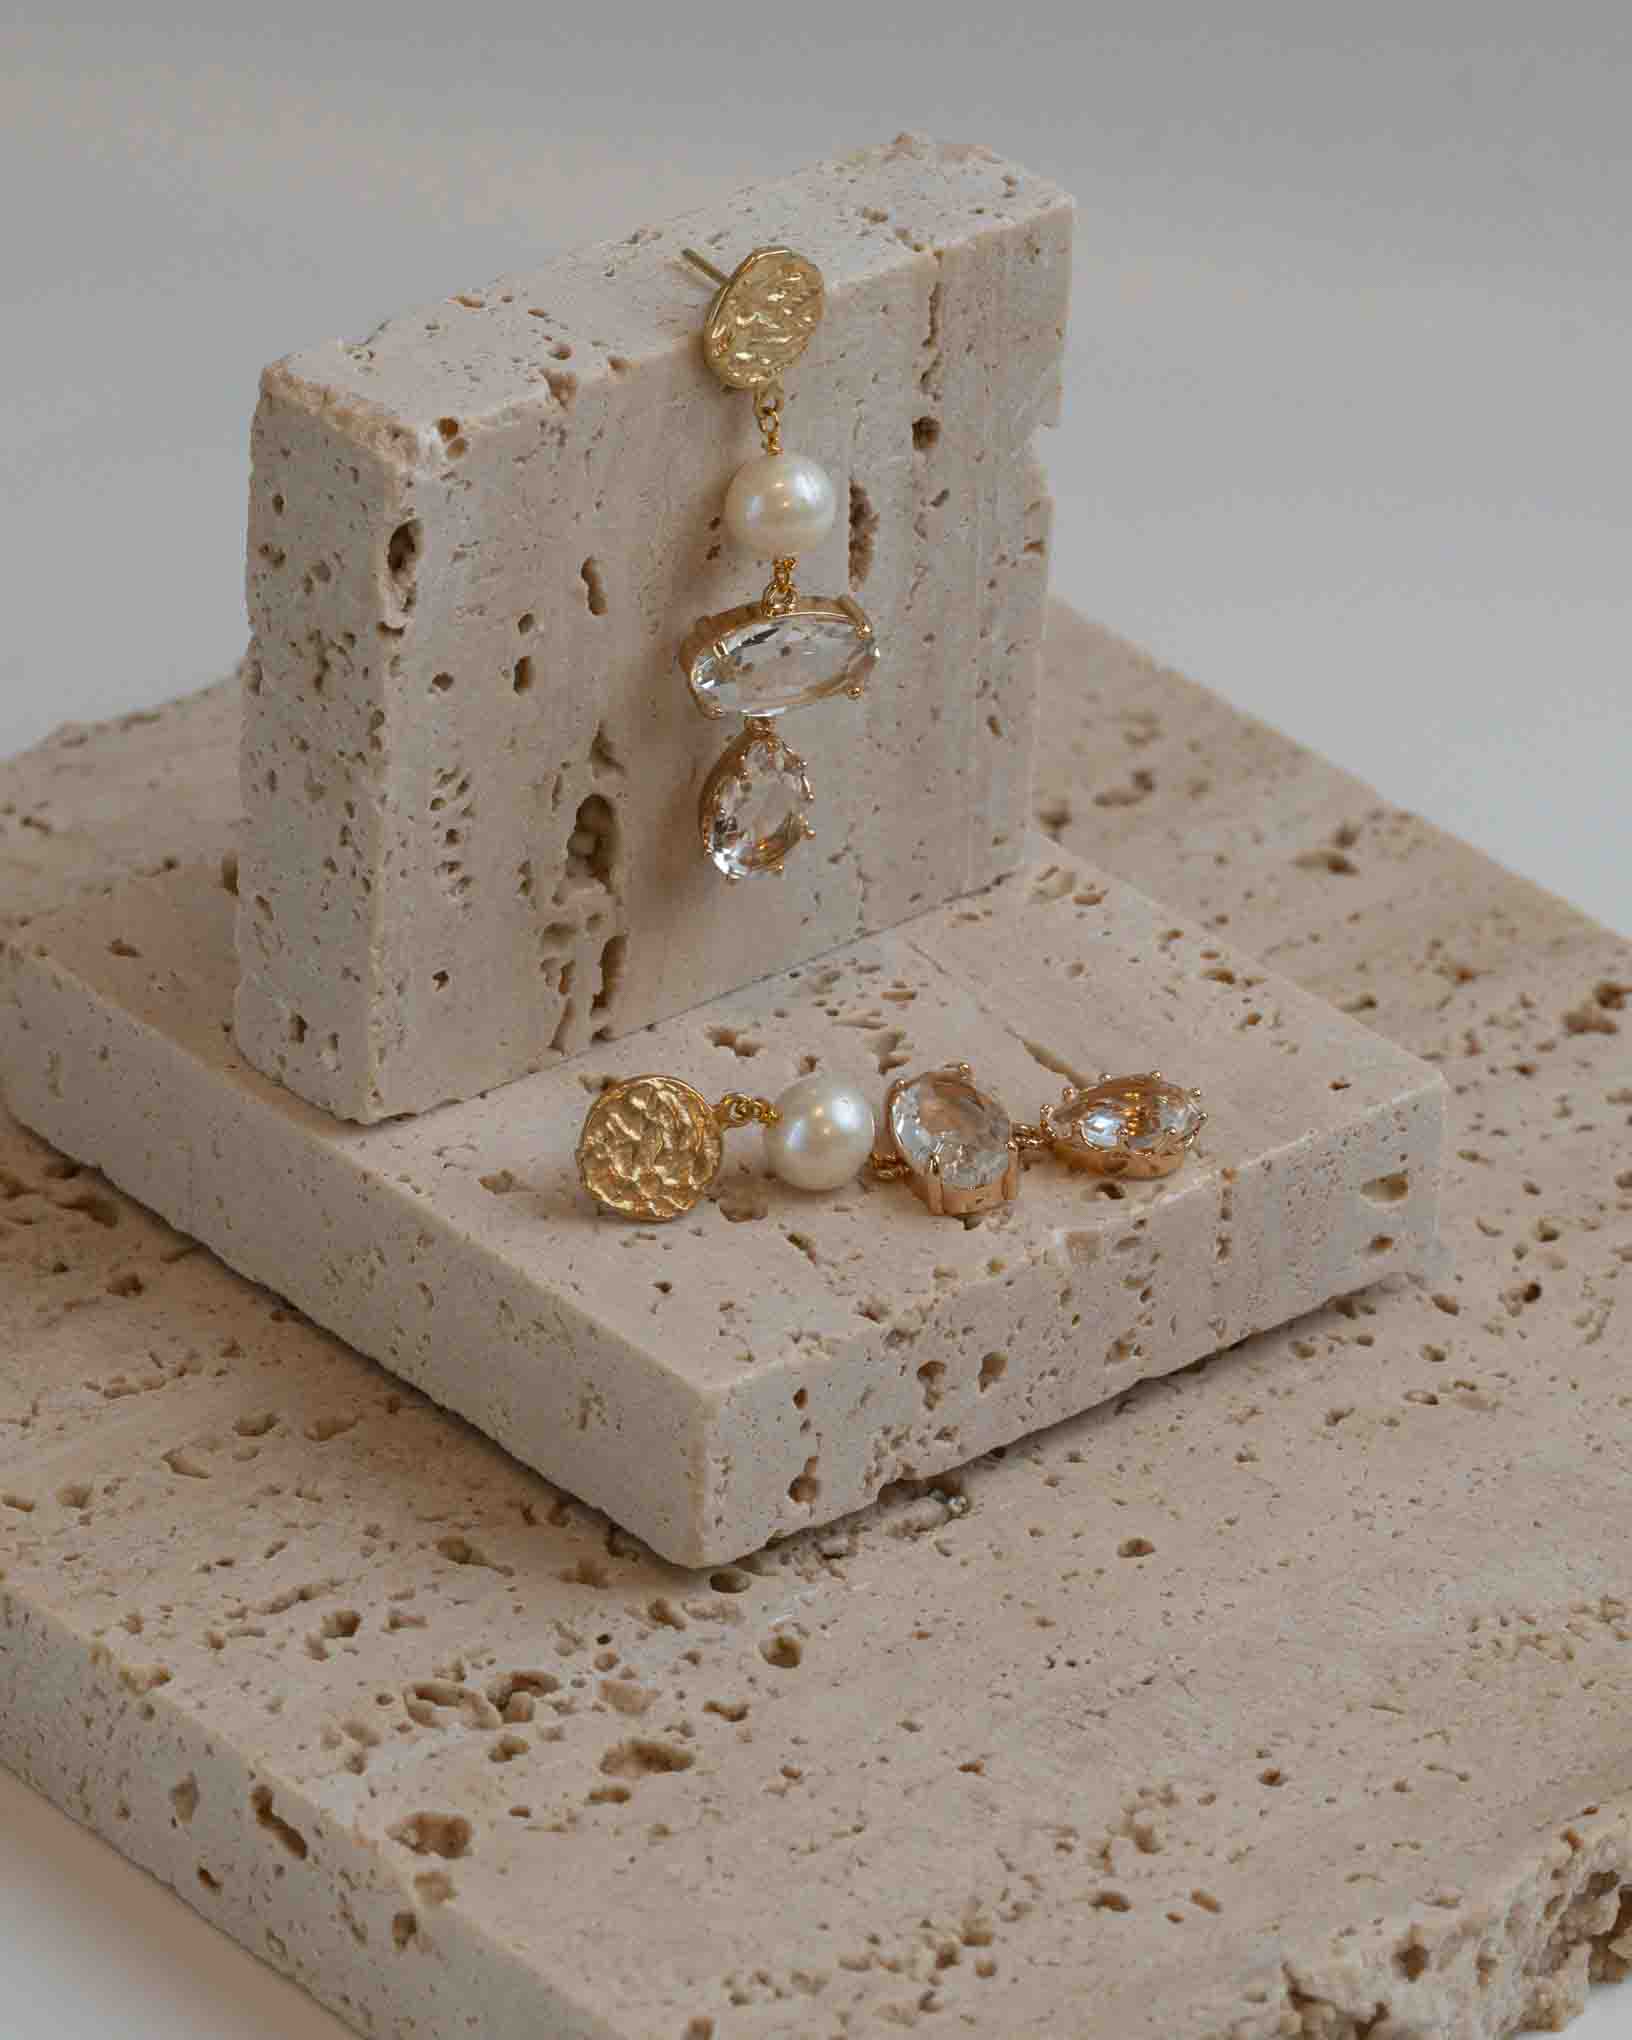 Ohrring Vietri sul Mare aus der Kollektion I Classici von Donna Rachele Jewelry